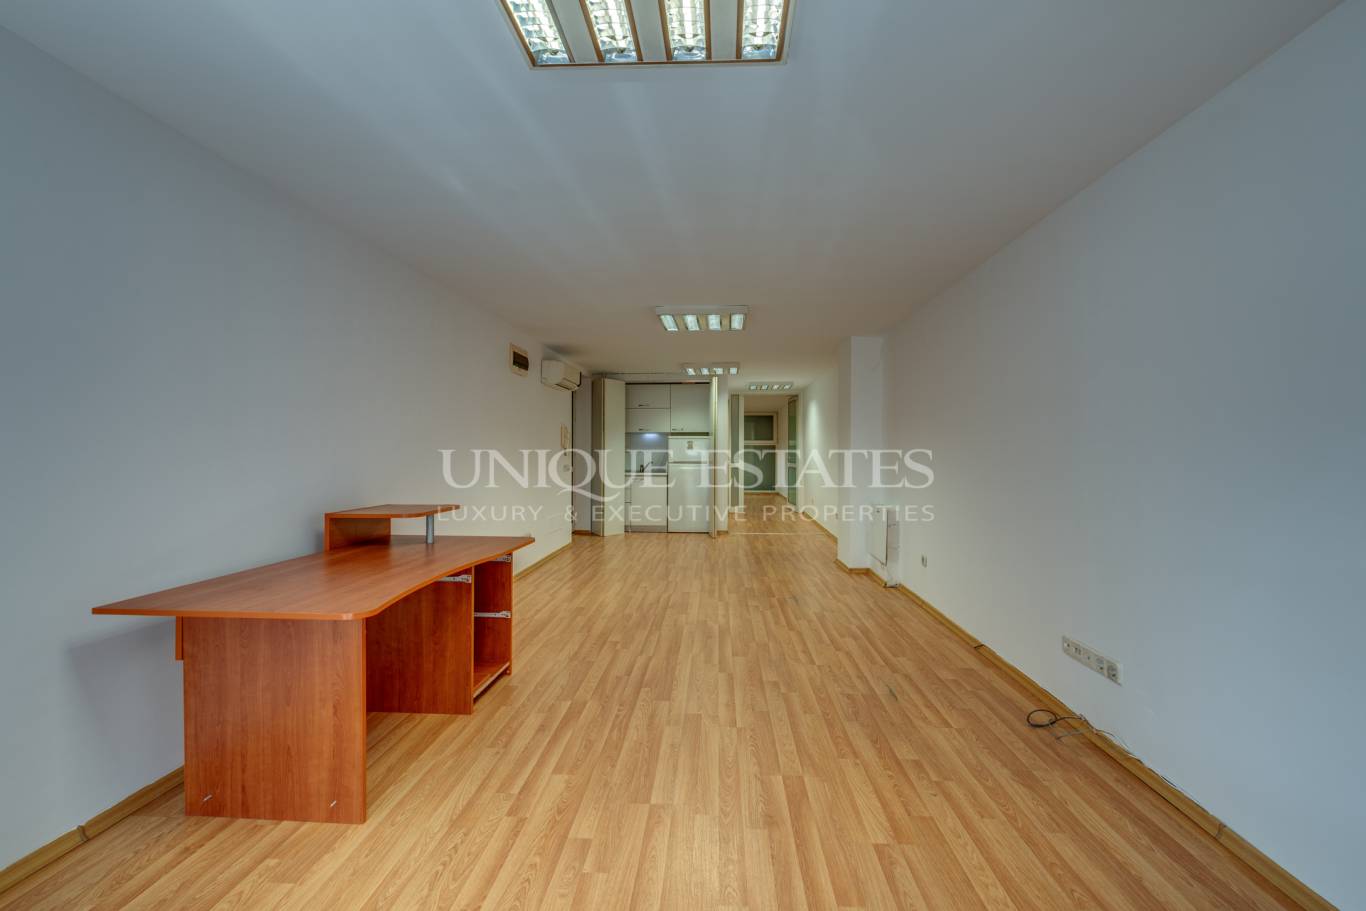 Офис под наем в София, Център - код на имота: N15145 - image 5